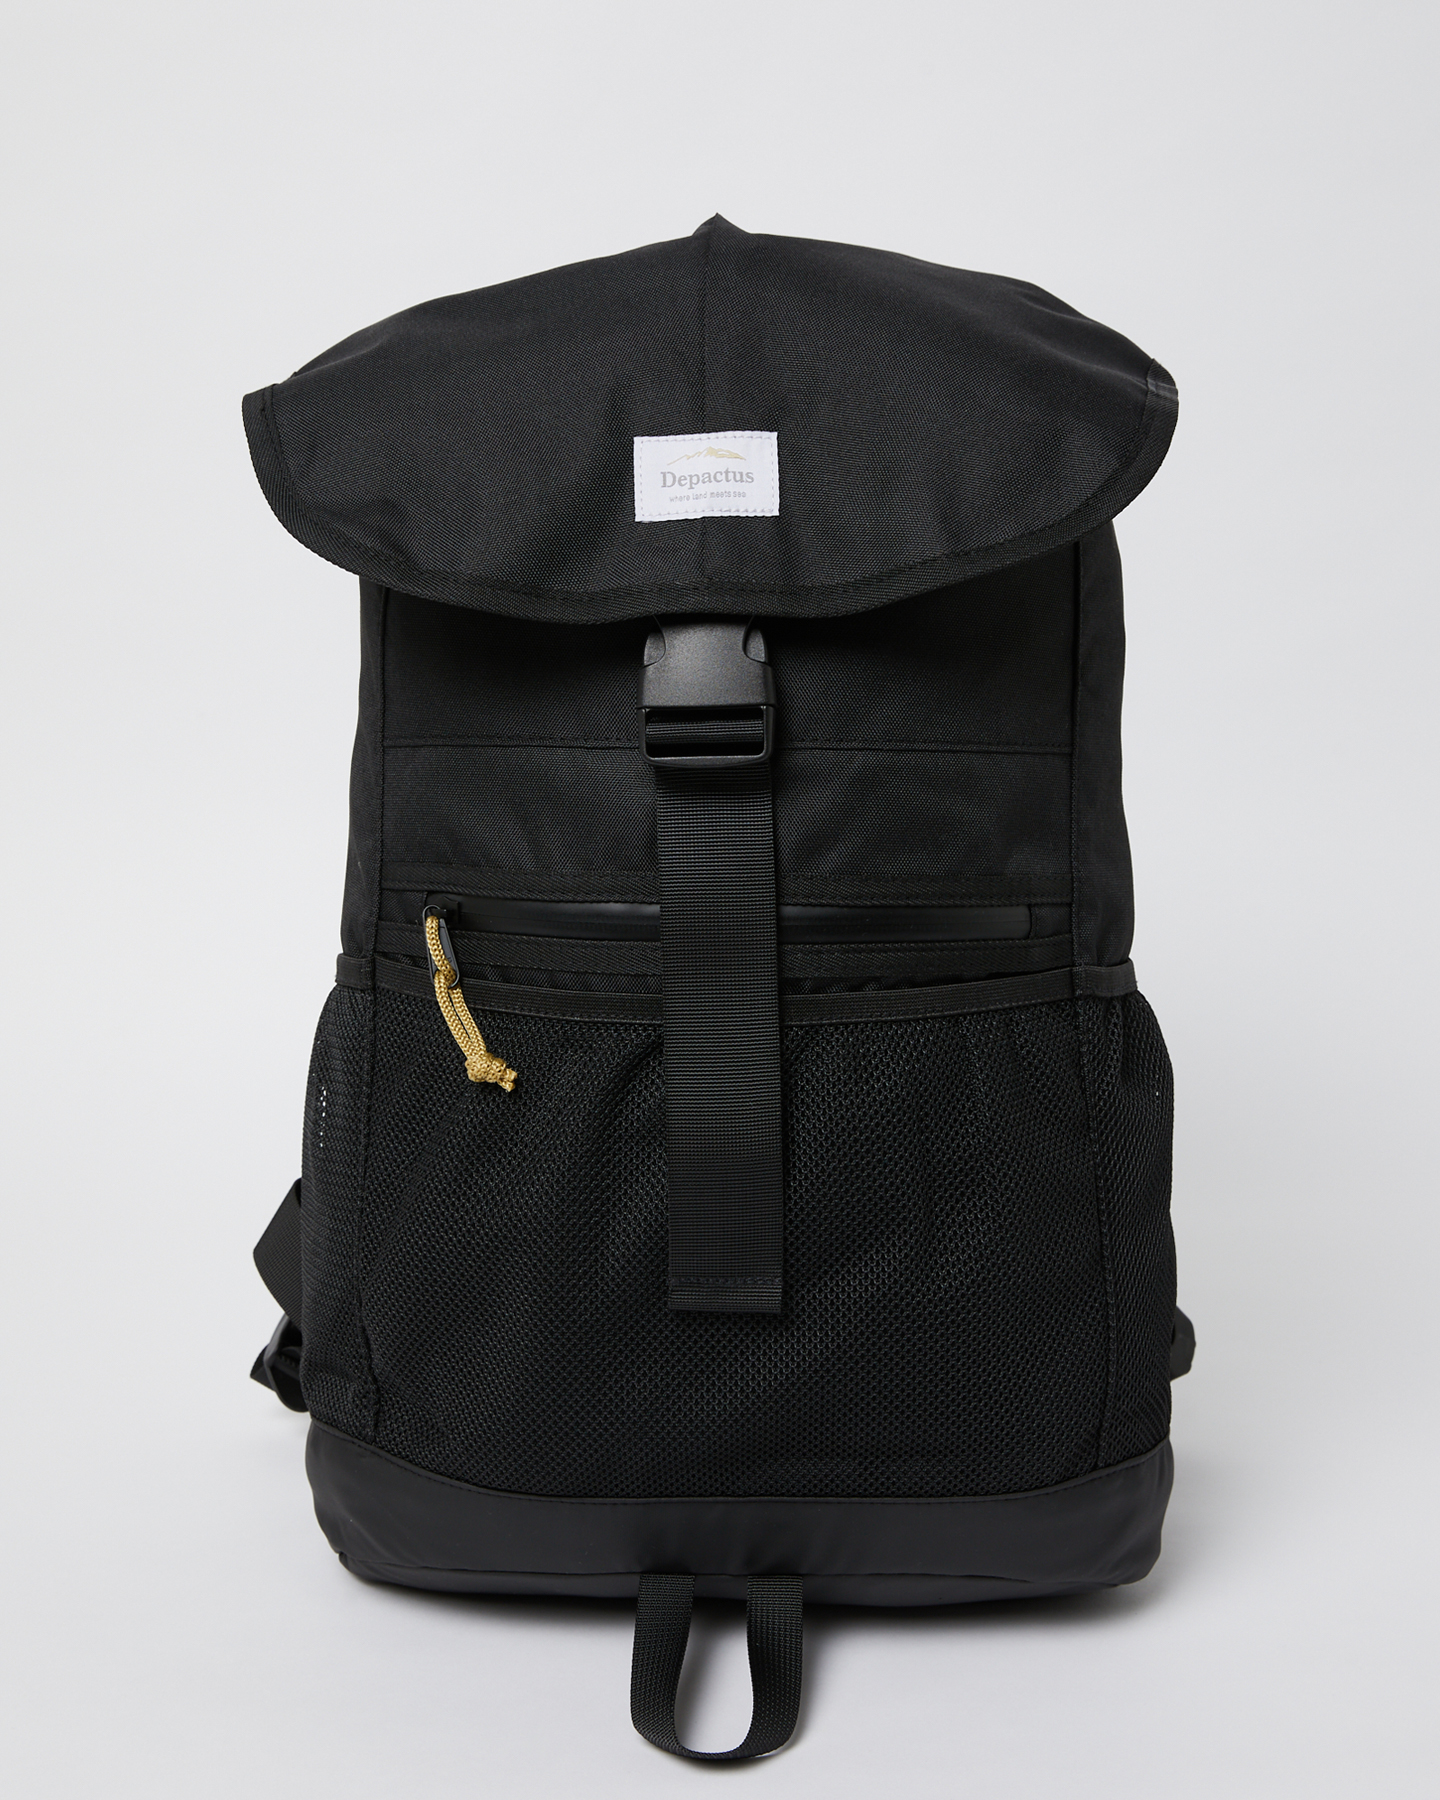 Depactus 25L Backpack - Black | SurfStitch